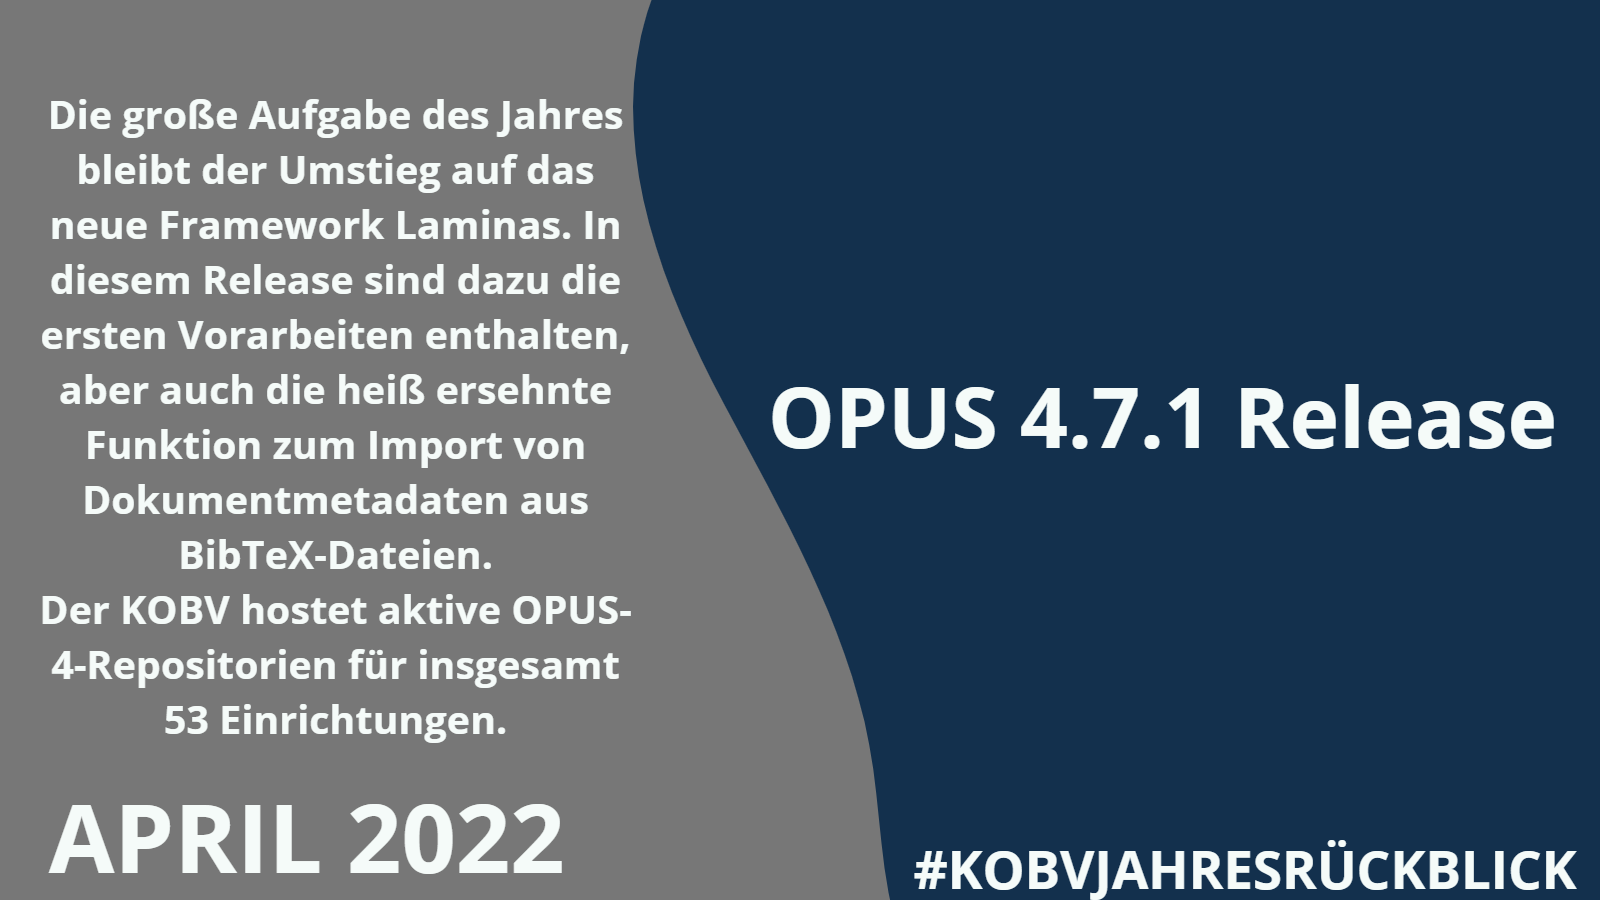 KOBV-Jahresrückblick-Kachel-April-2022